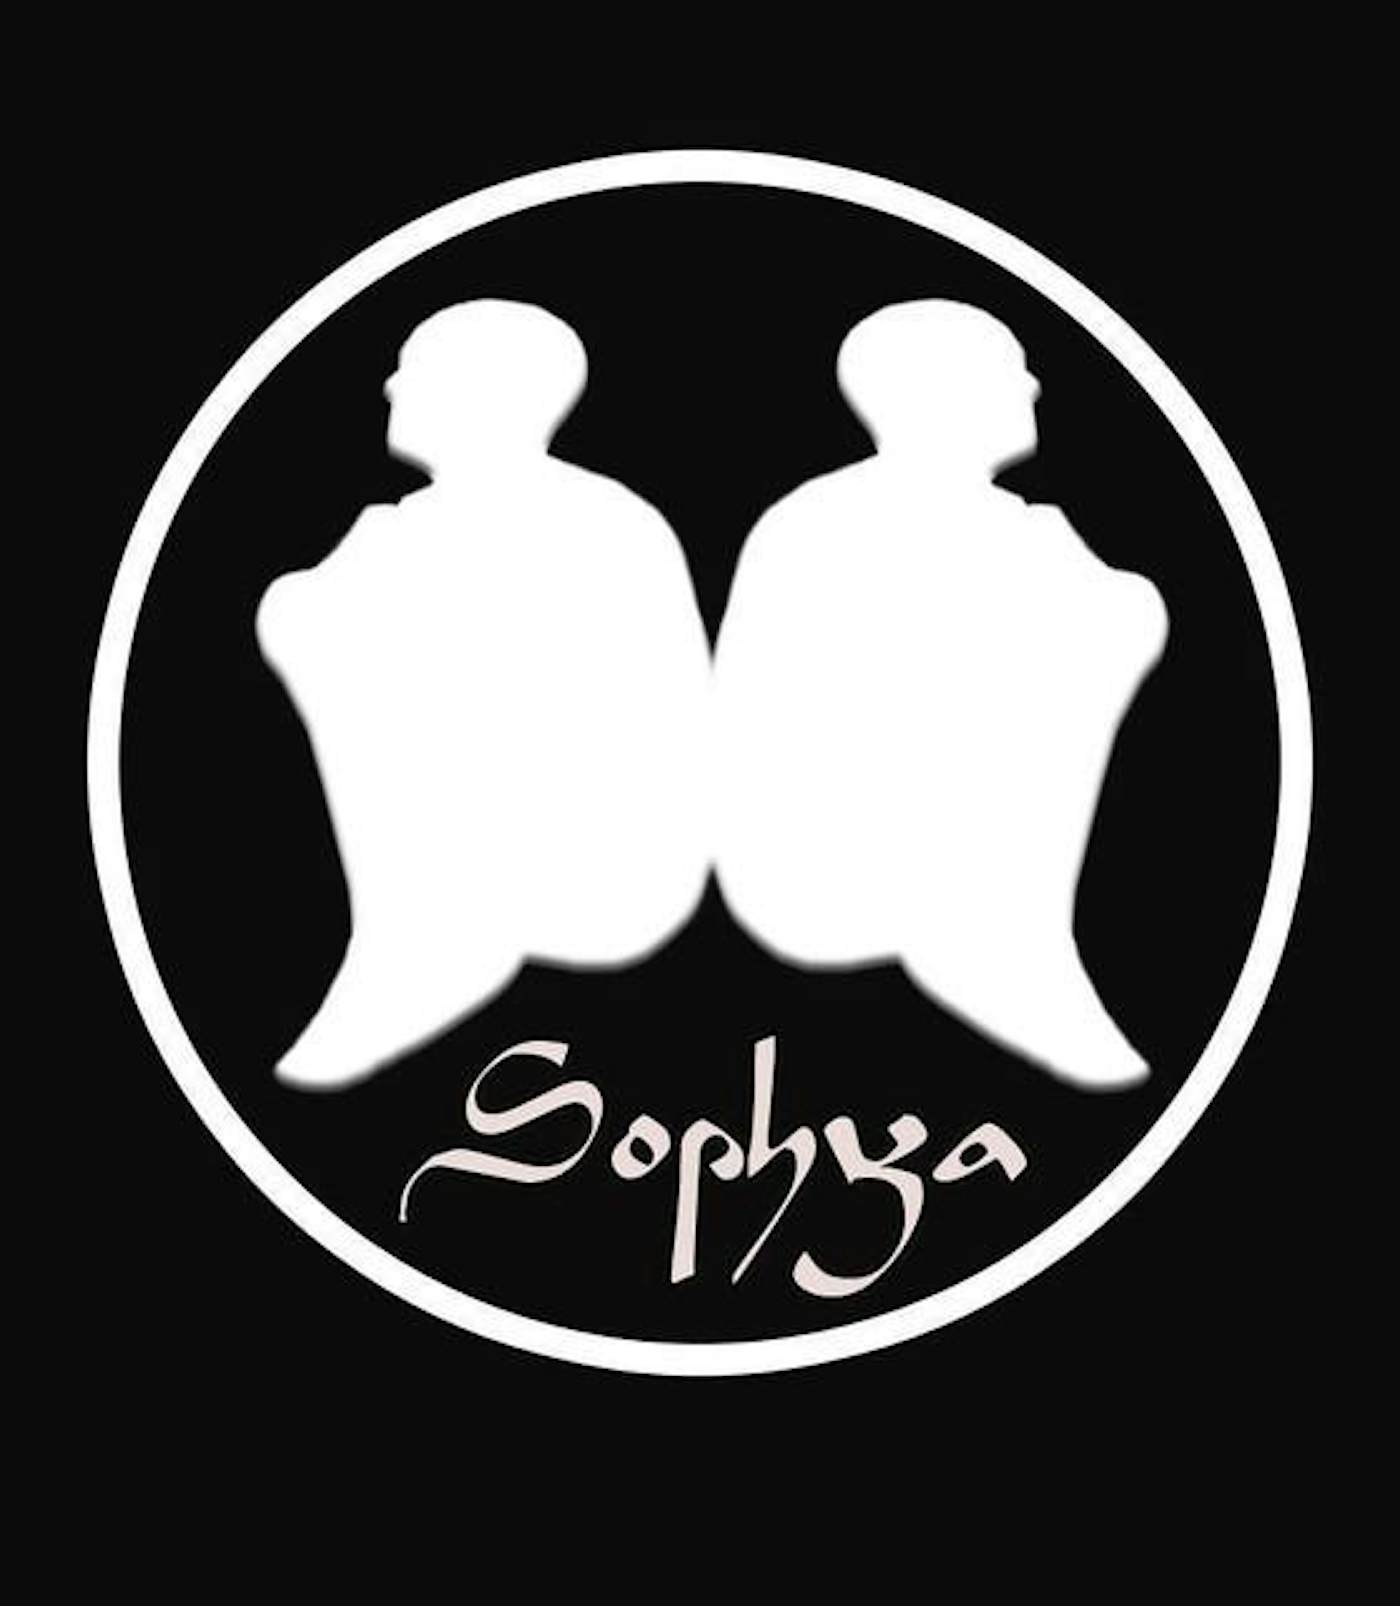 Sophya